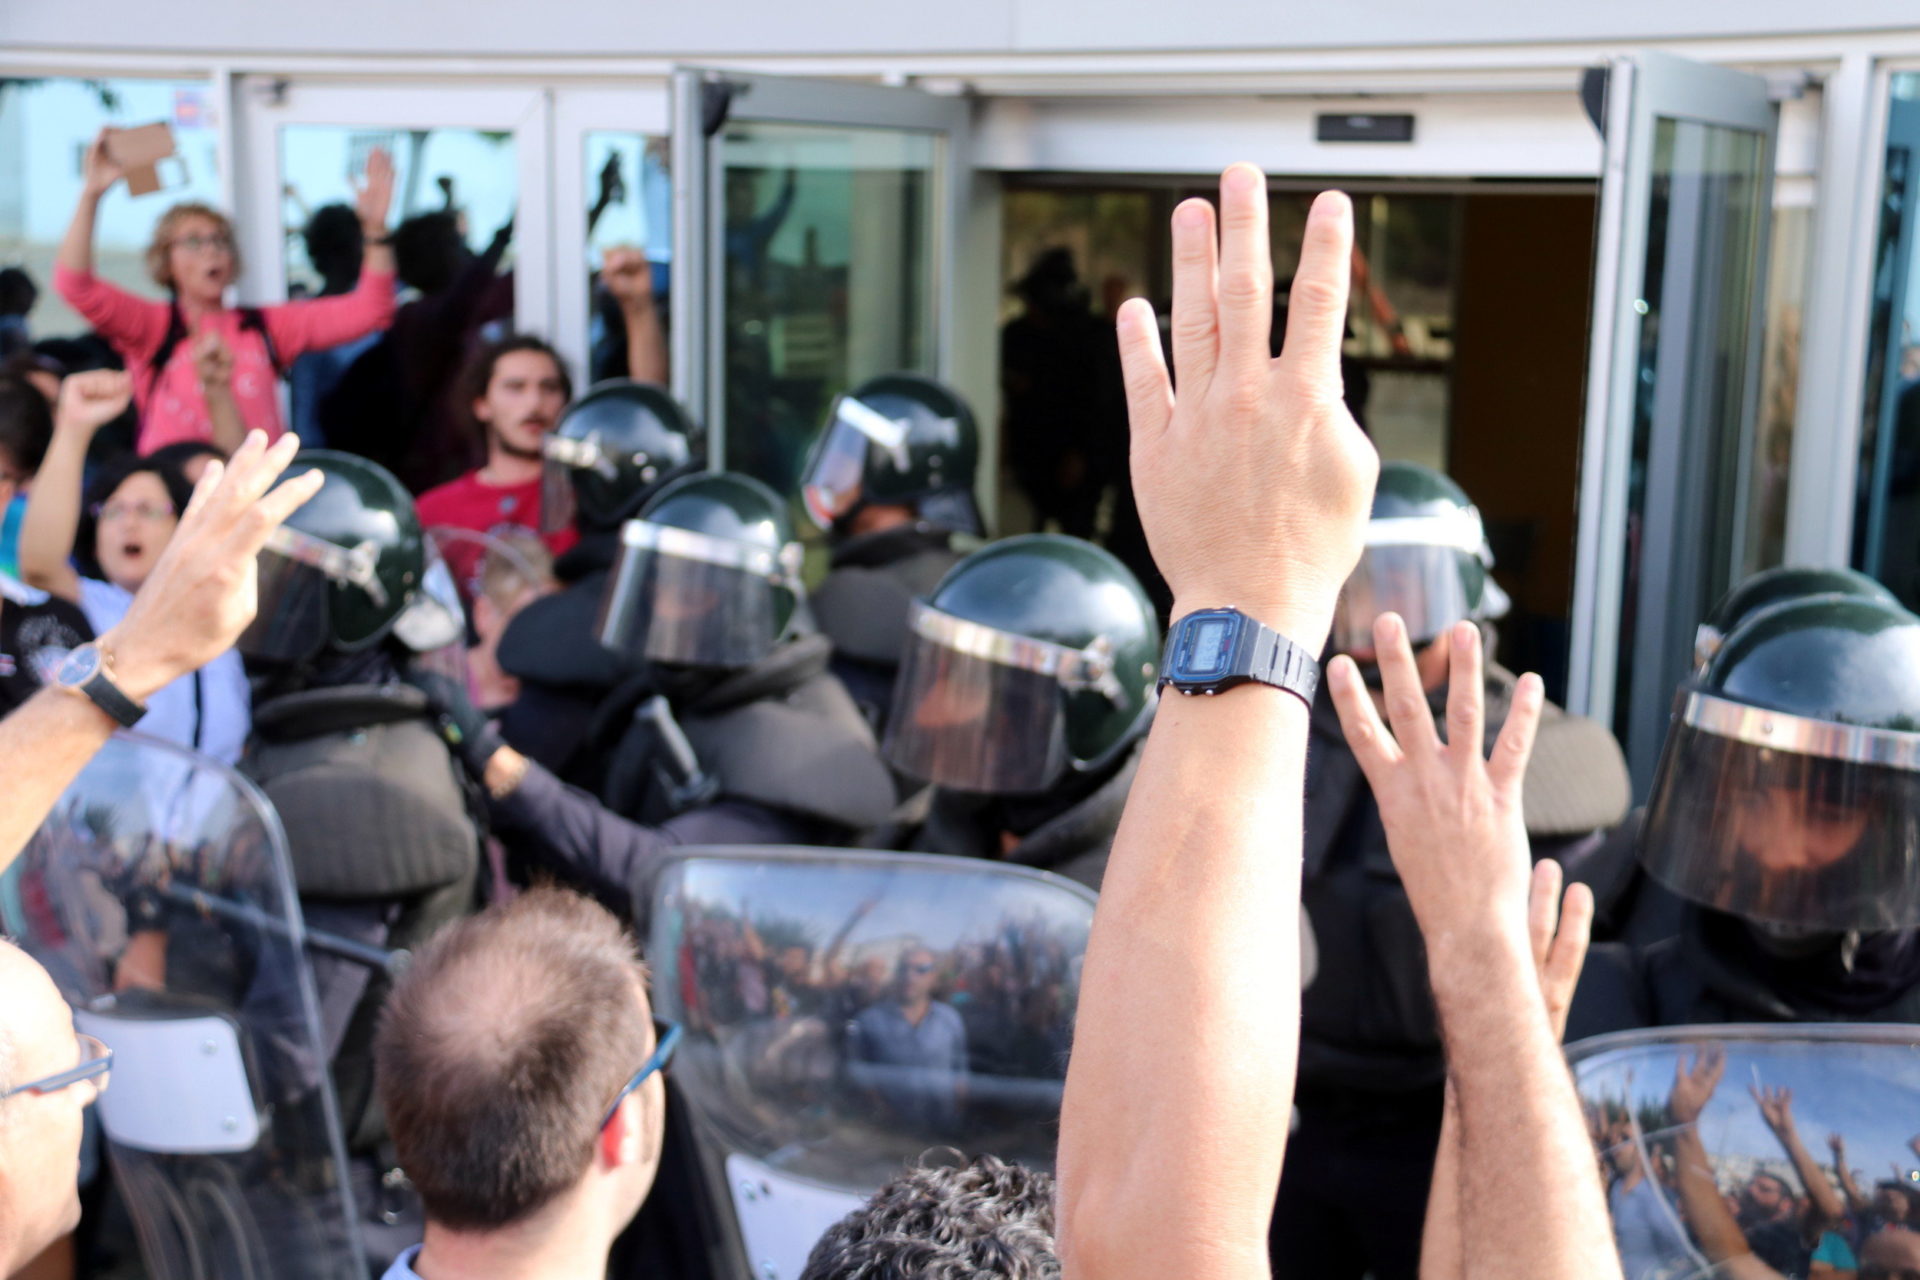 Pla detall de mans mostrant quatre dits davant dels antiavalots de la Guàrdia Civil / Anna Ferràs